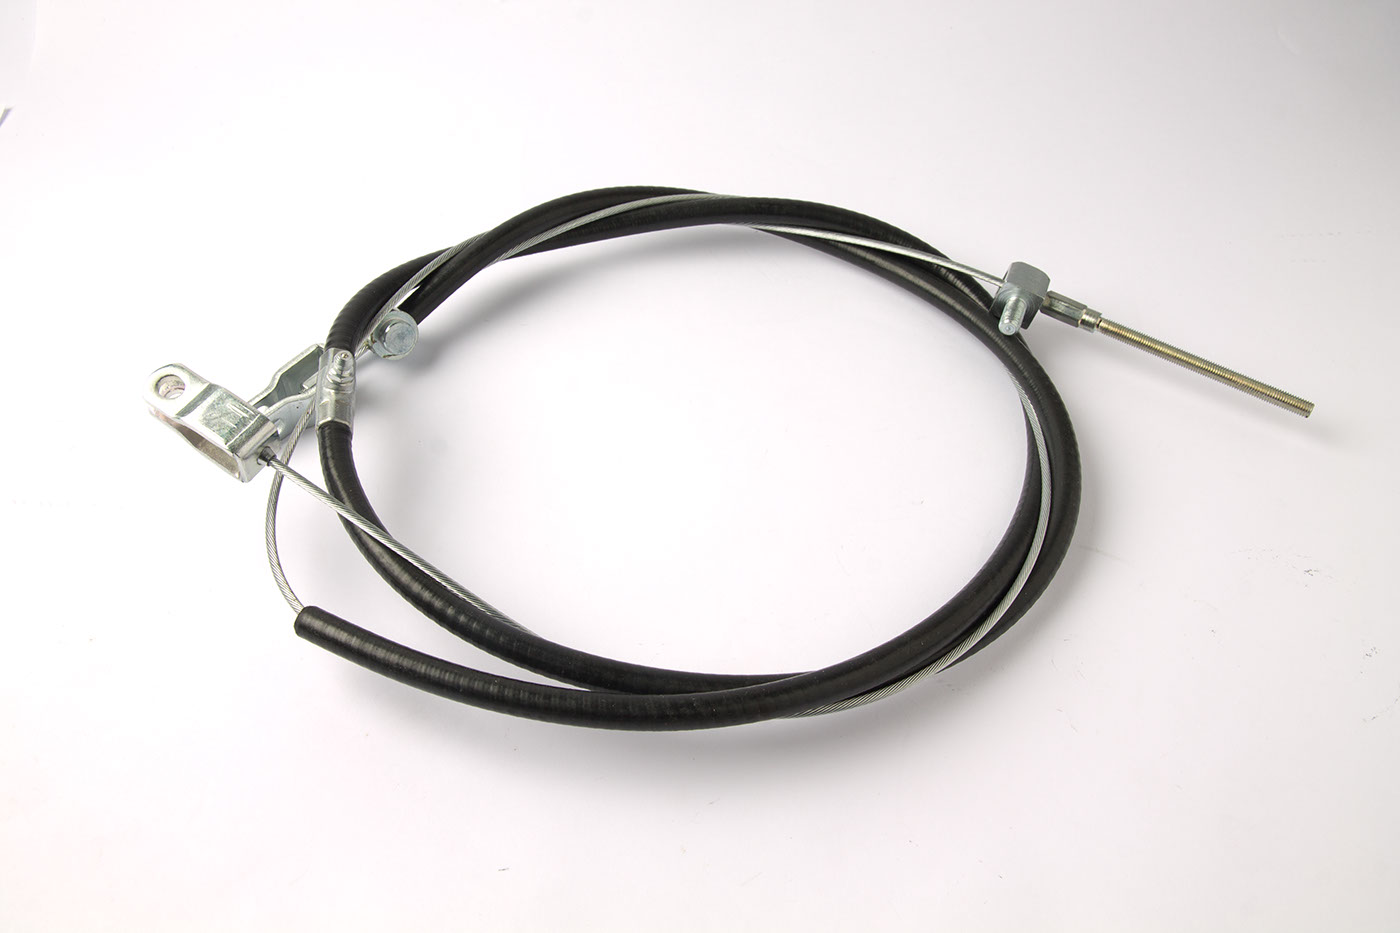 Handbremsseil
Handbrake cable
Câble de frein à main
Cable d